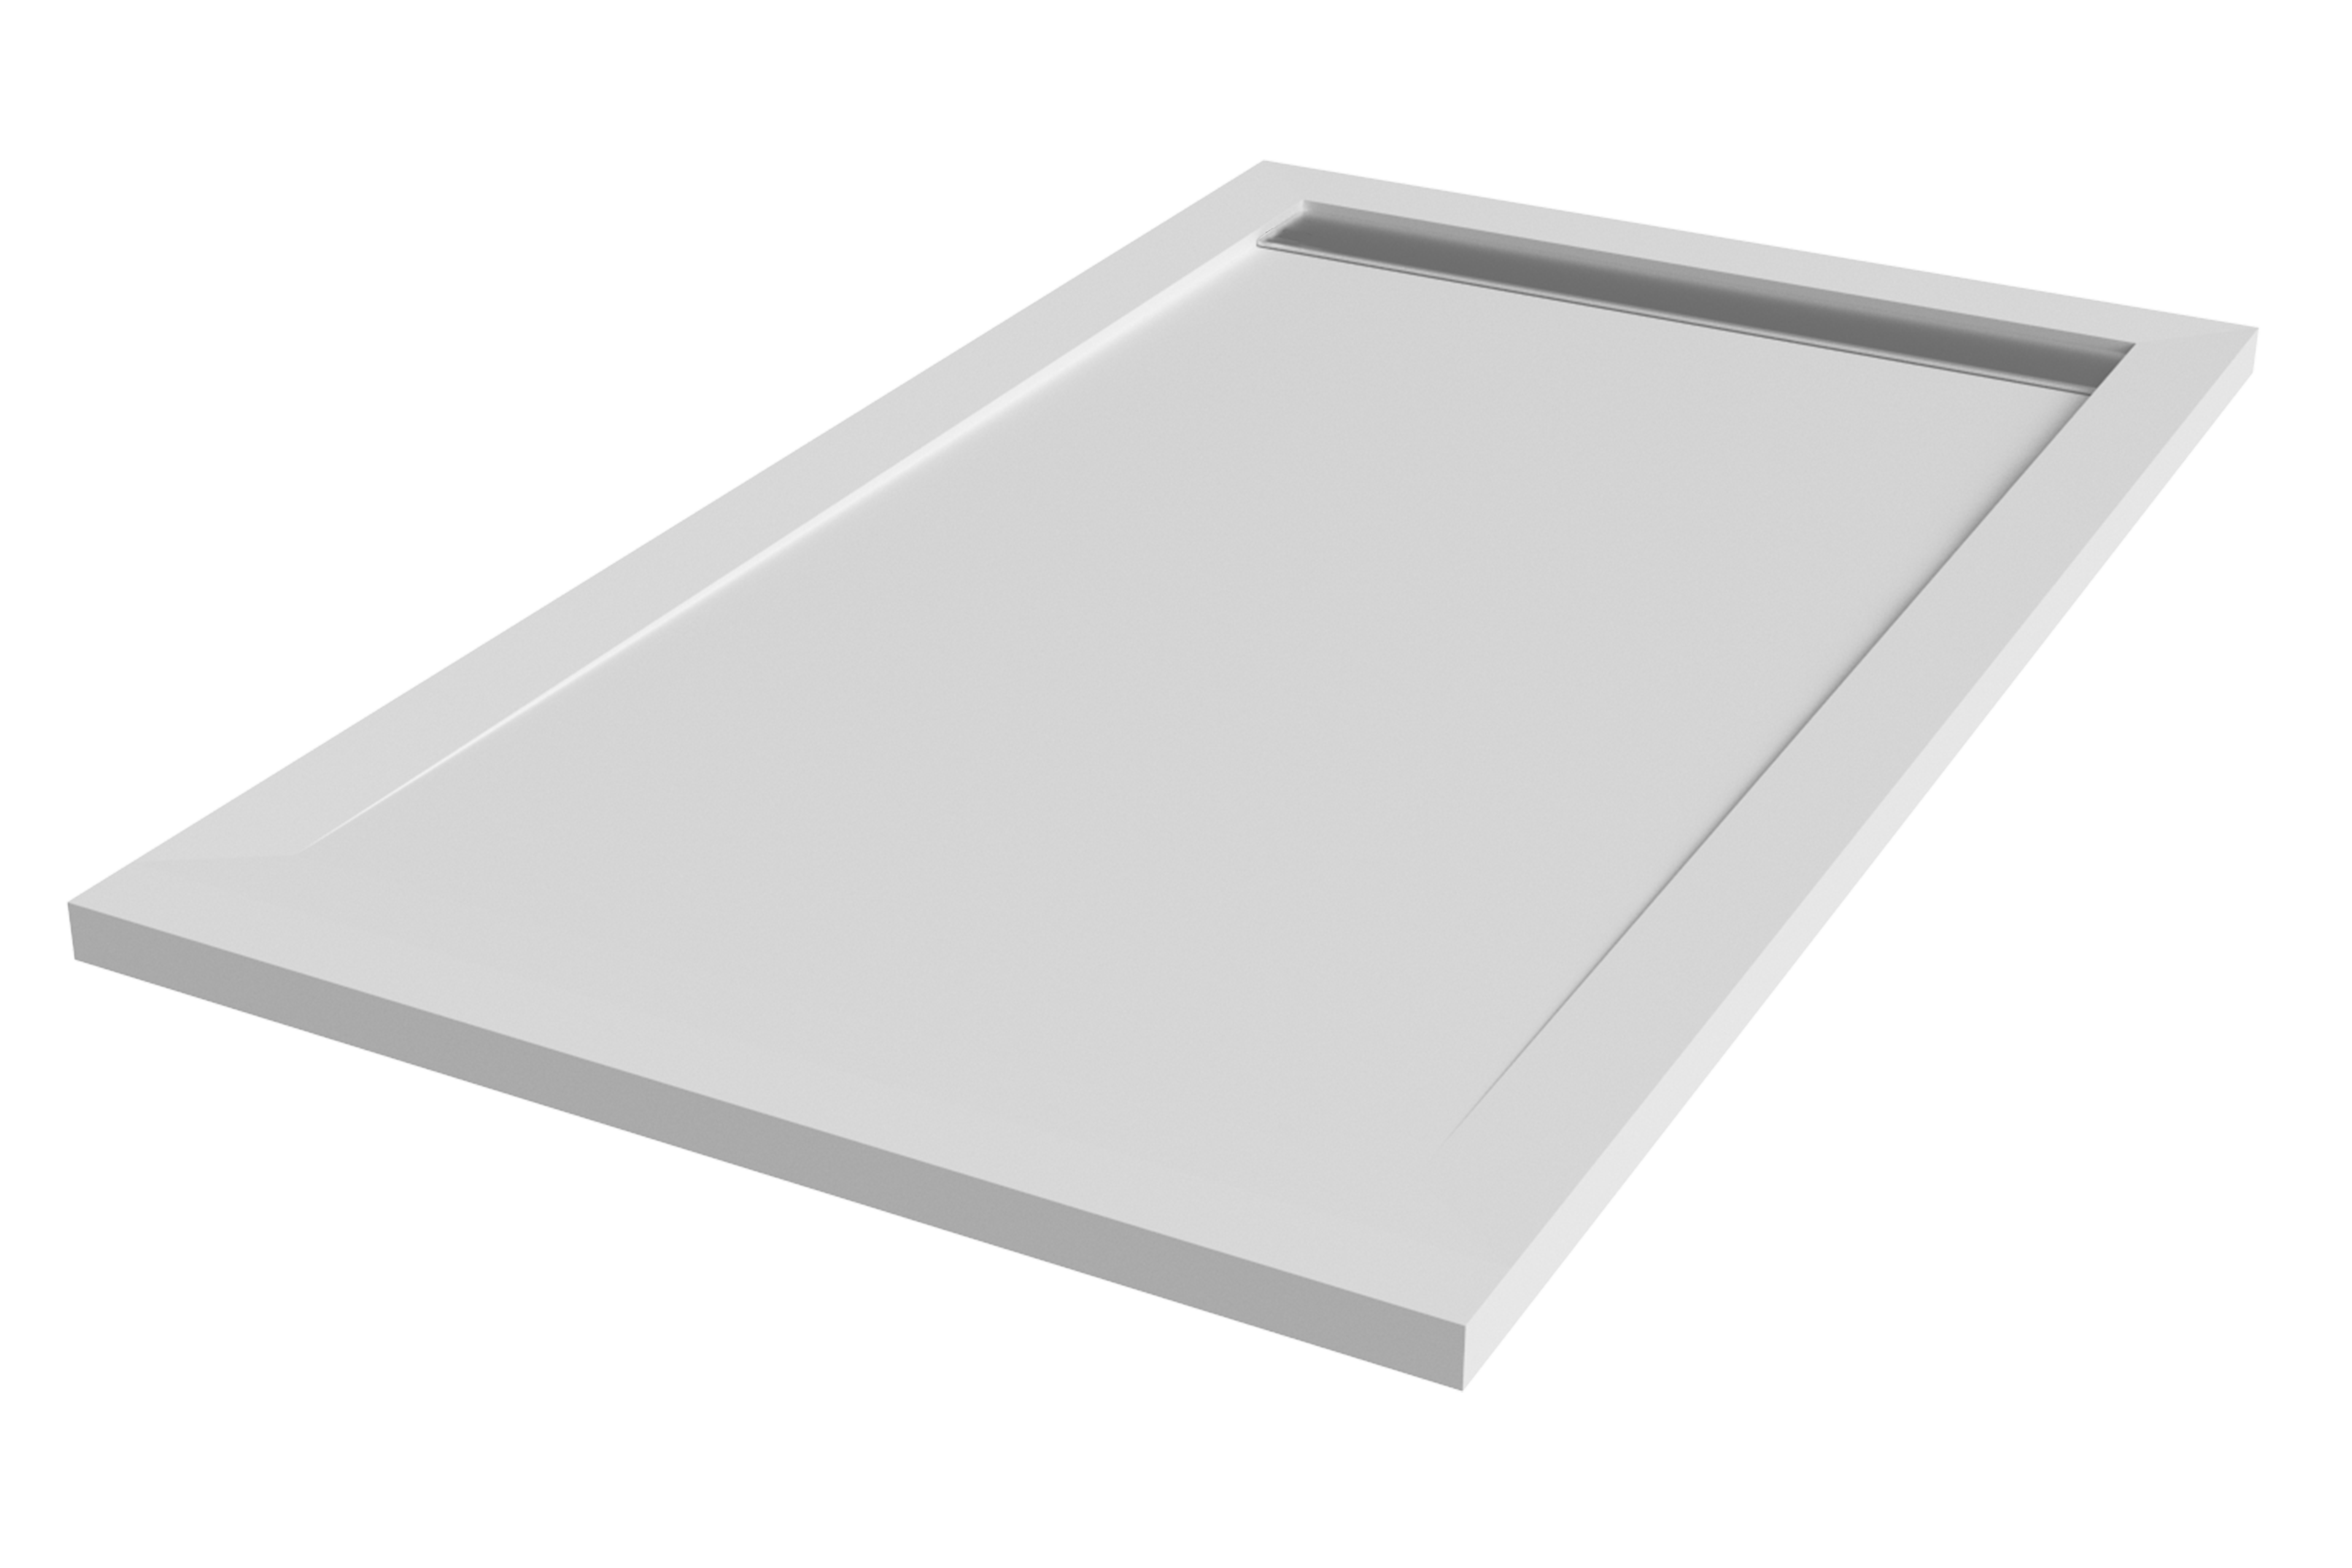 Plato de ducha kaliso 220x70 cm blanco